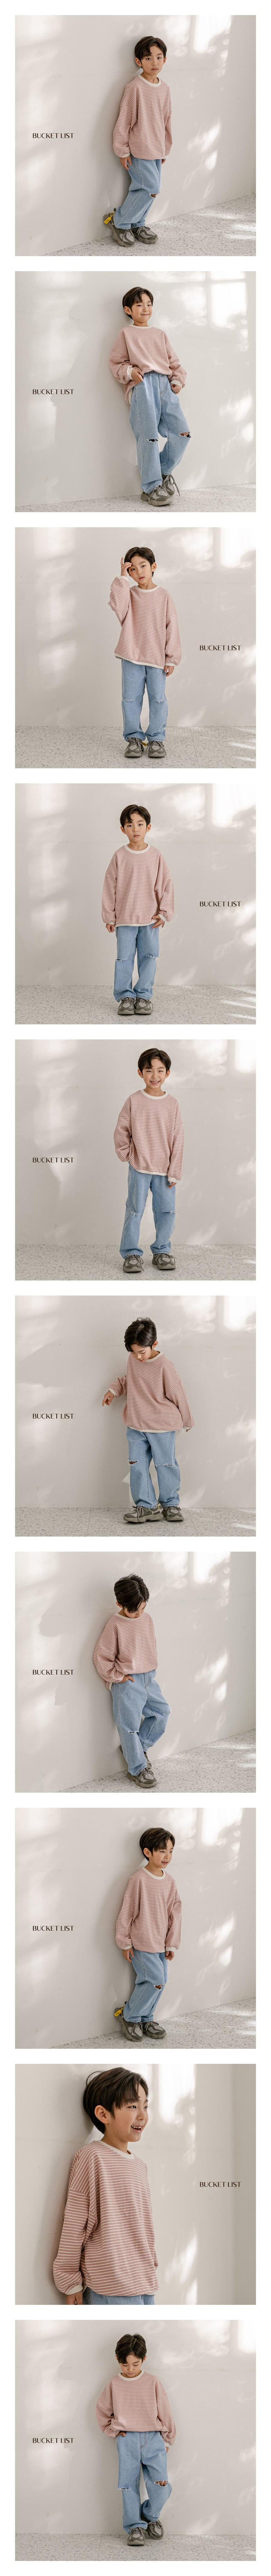 Bucket List - Korean Children Fashion - #magicofchildhood - Lucy Stripes Sweatshirt